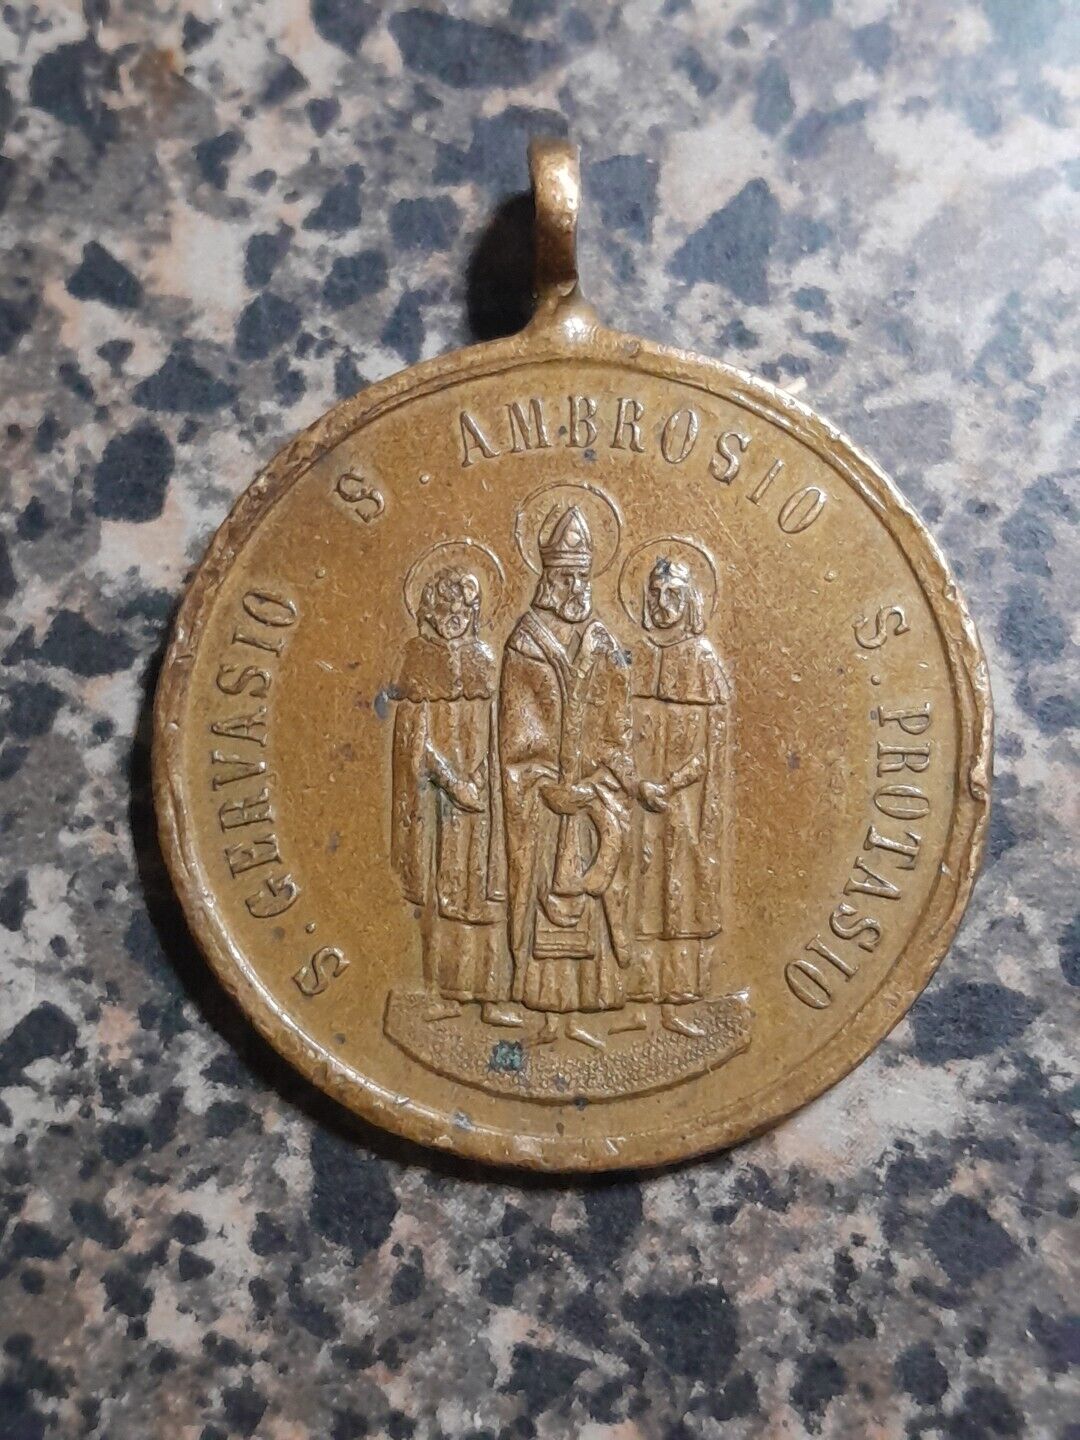 Vintage S. Gervasio S. Ambrosio S. Protasio Solenne Delle Reliquie Medal